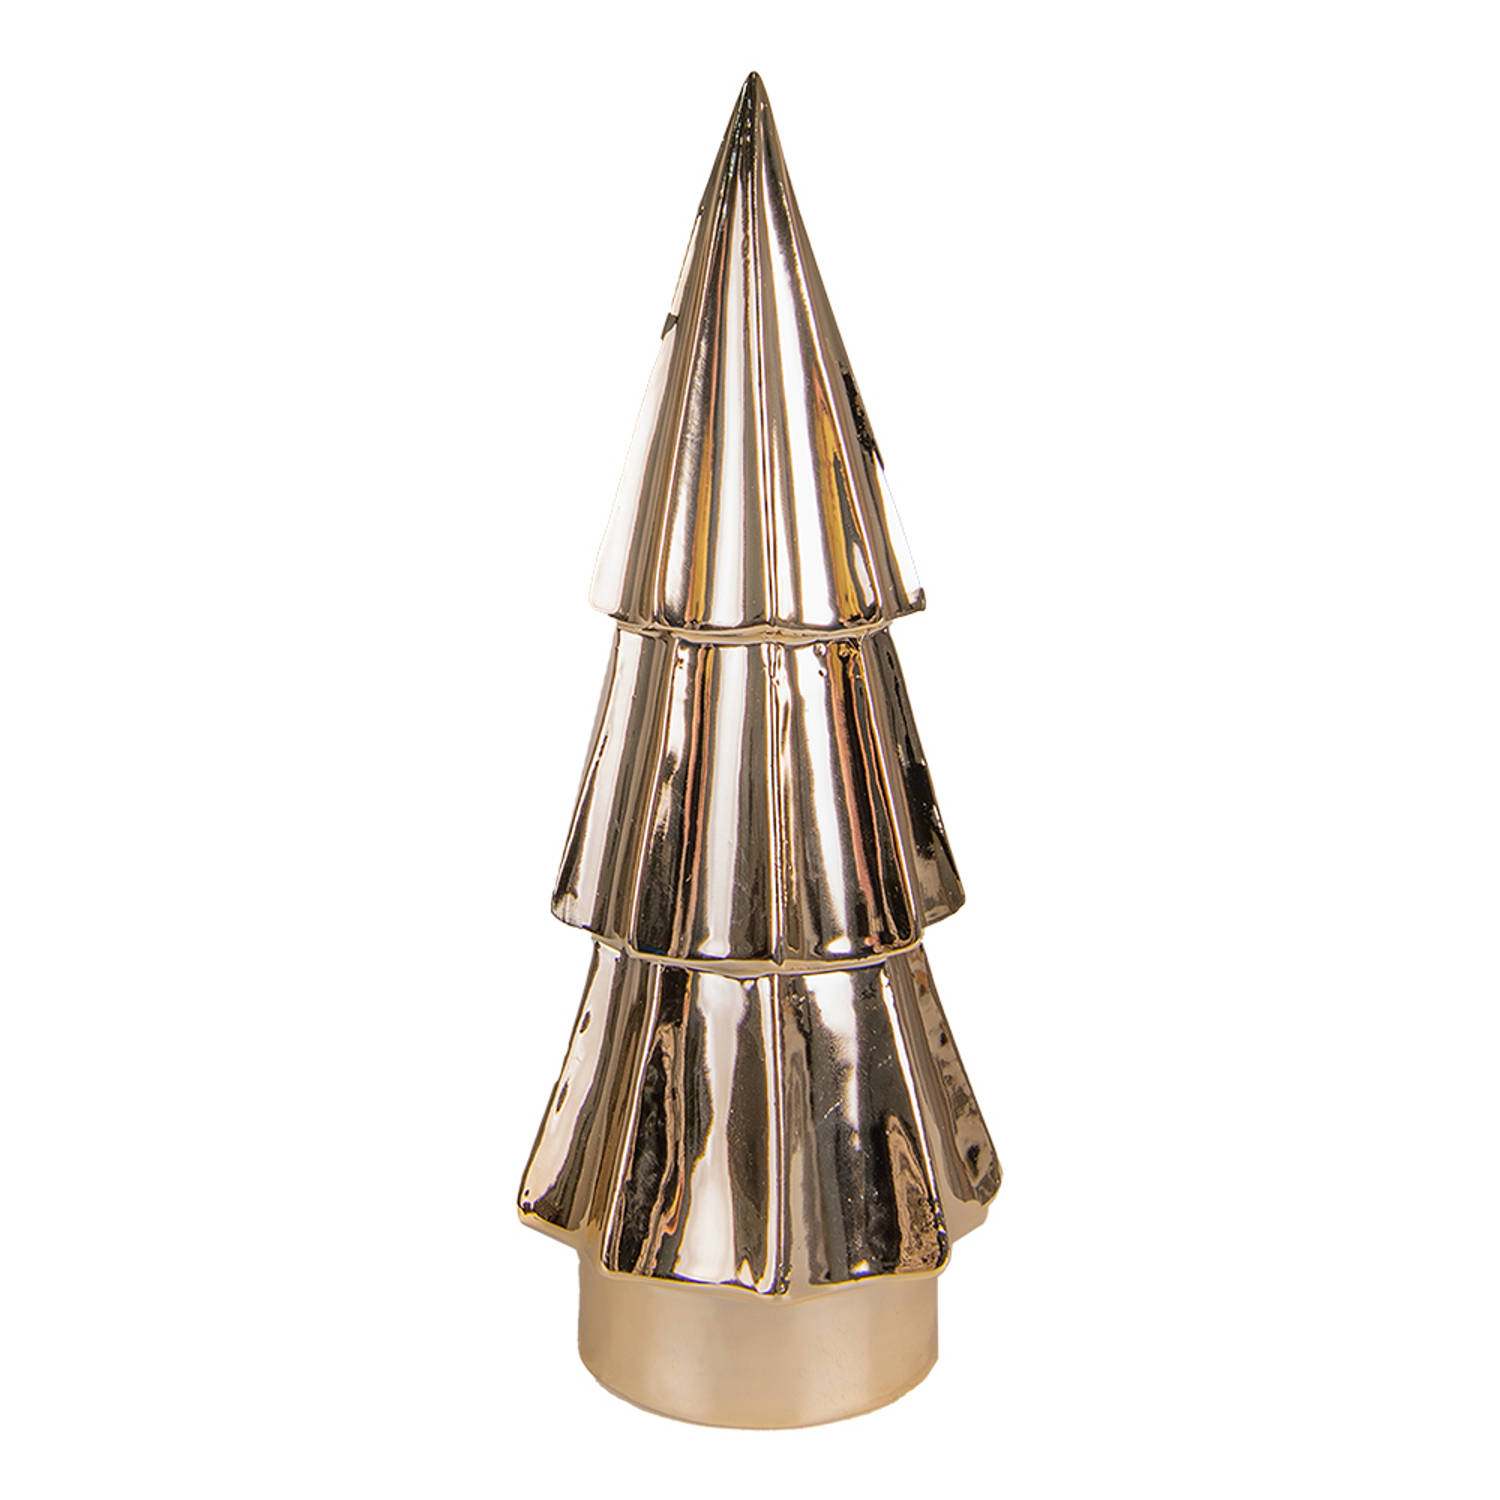 HAES DECO - Decoratieve Kerstboom - Formaat Ø 9x24 cm - Kleur Goudkleurig - Materiaal Porselein - Kerstversiering, Kerstdecoratie